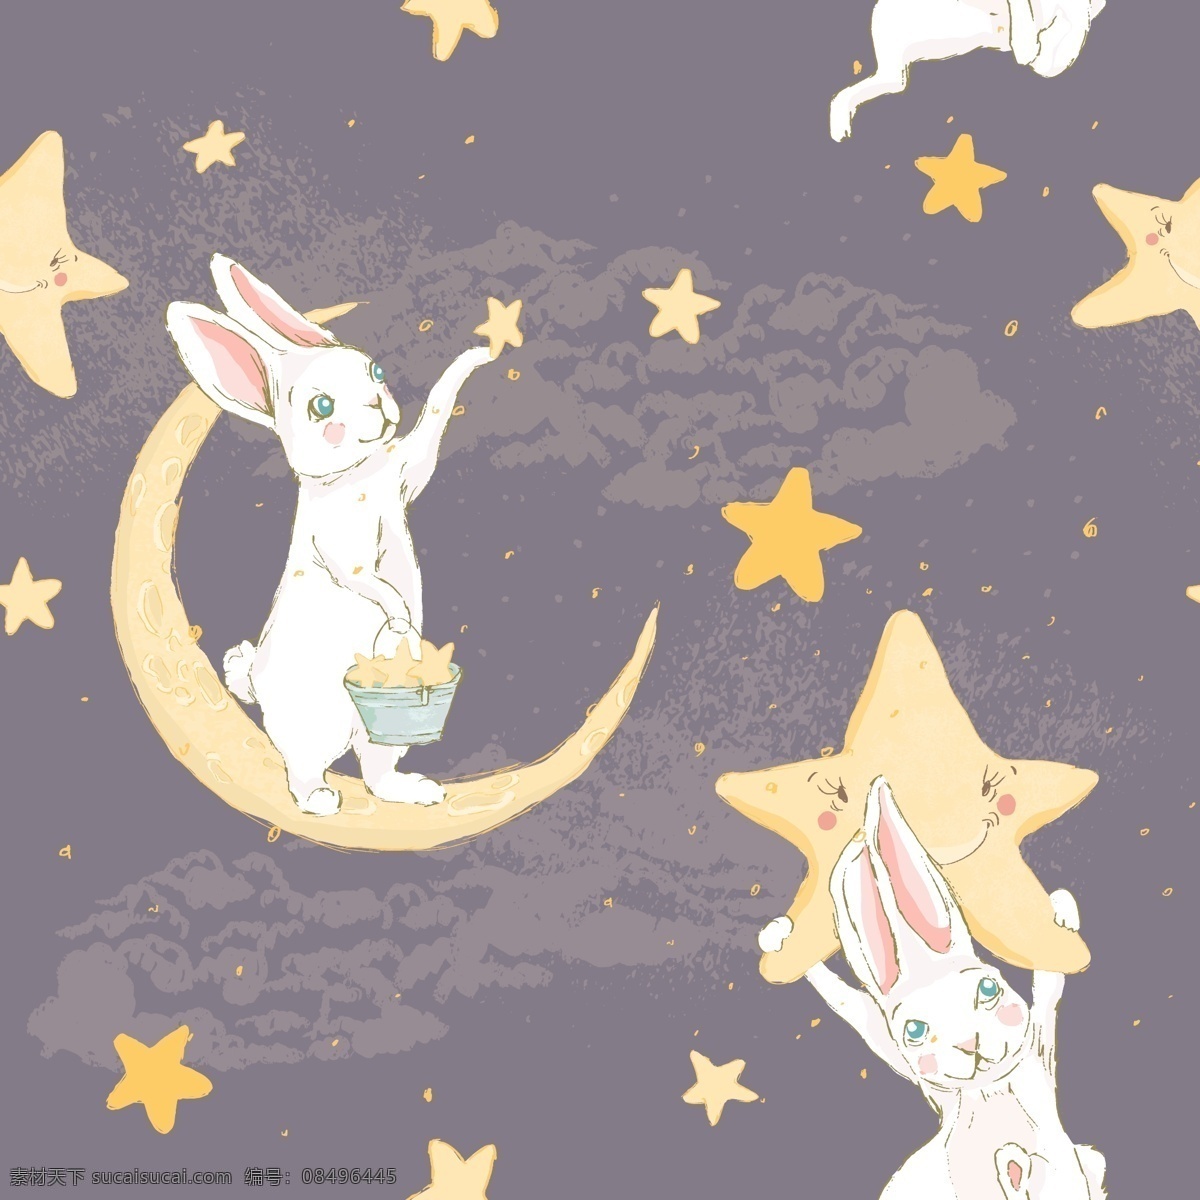 小 兔子 卡通 插画 小清新 动物 晚安 星空 梦幻 浪漫插画 绘画 图案